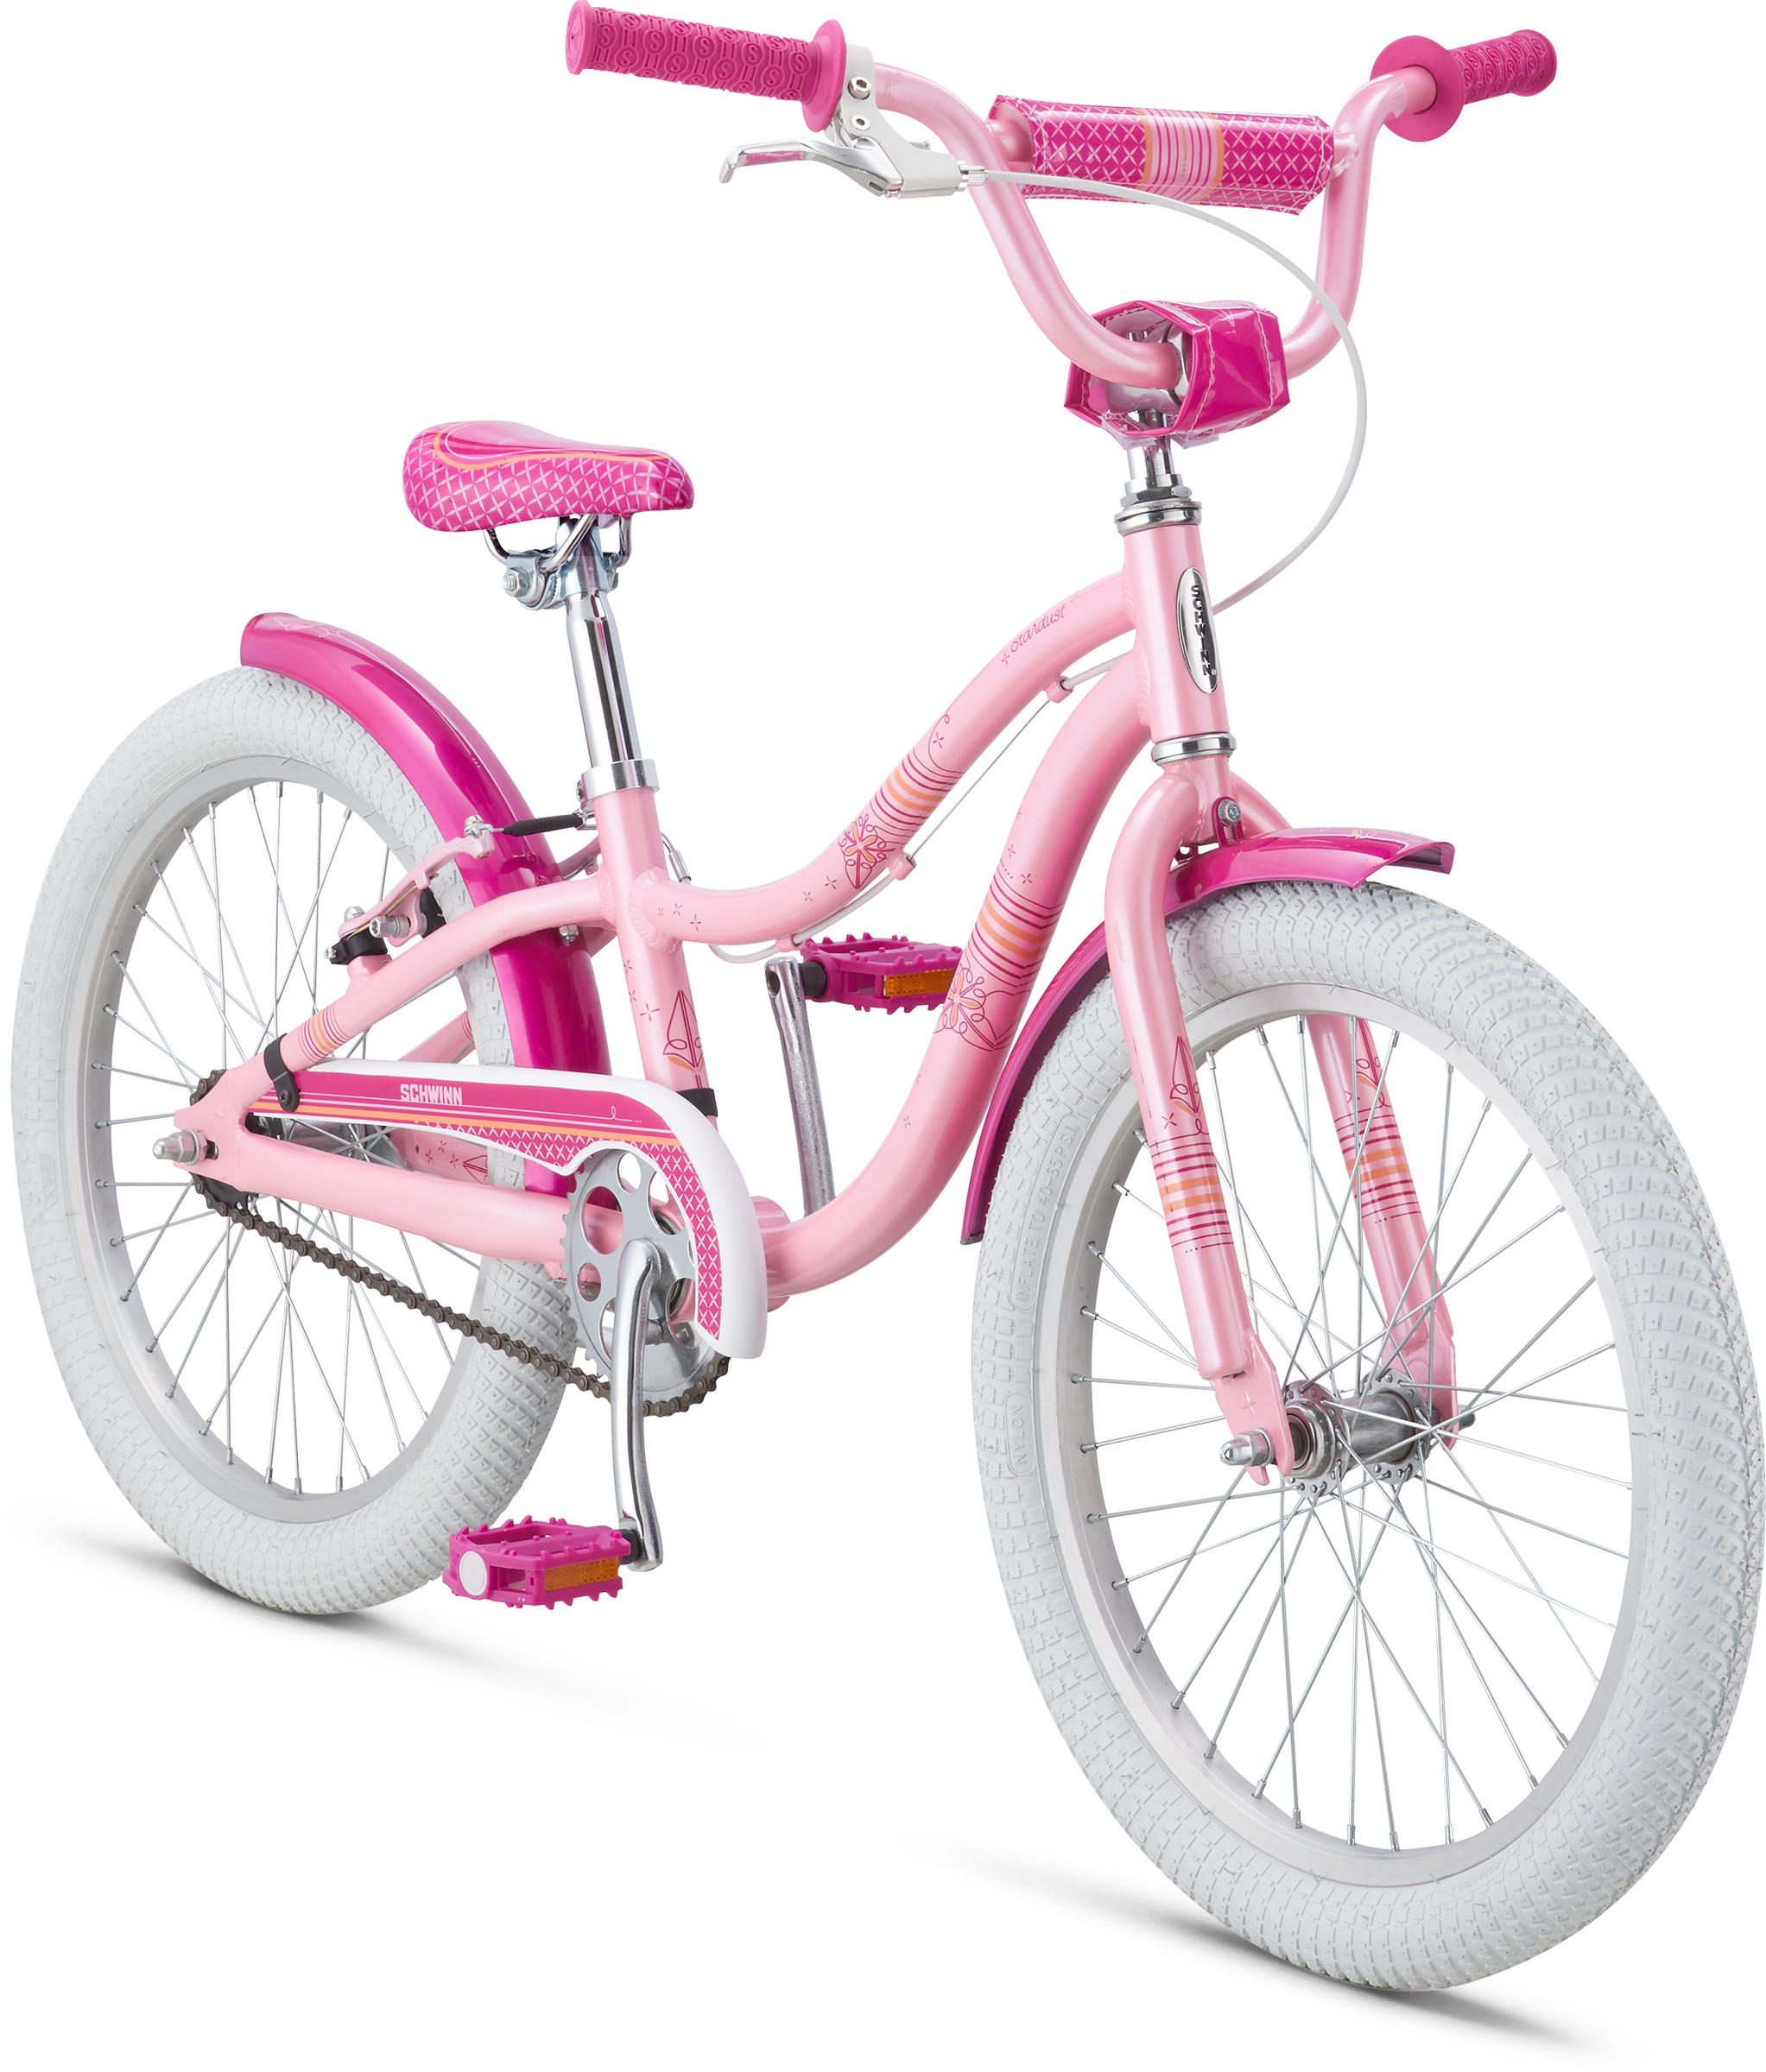 Велосипед для девочек купить авито. Велосипед Princess 20 Schwinn. Велосипед Schwinn Stardust 2014 Lavender. Подростковый городской велосипед Schwinn Stardust. Schwinn велосипед детский 18.